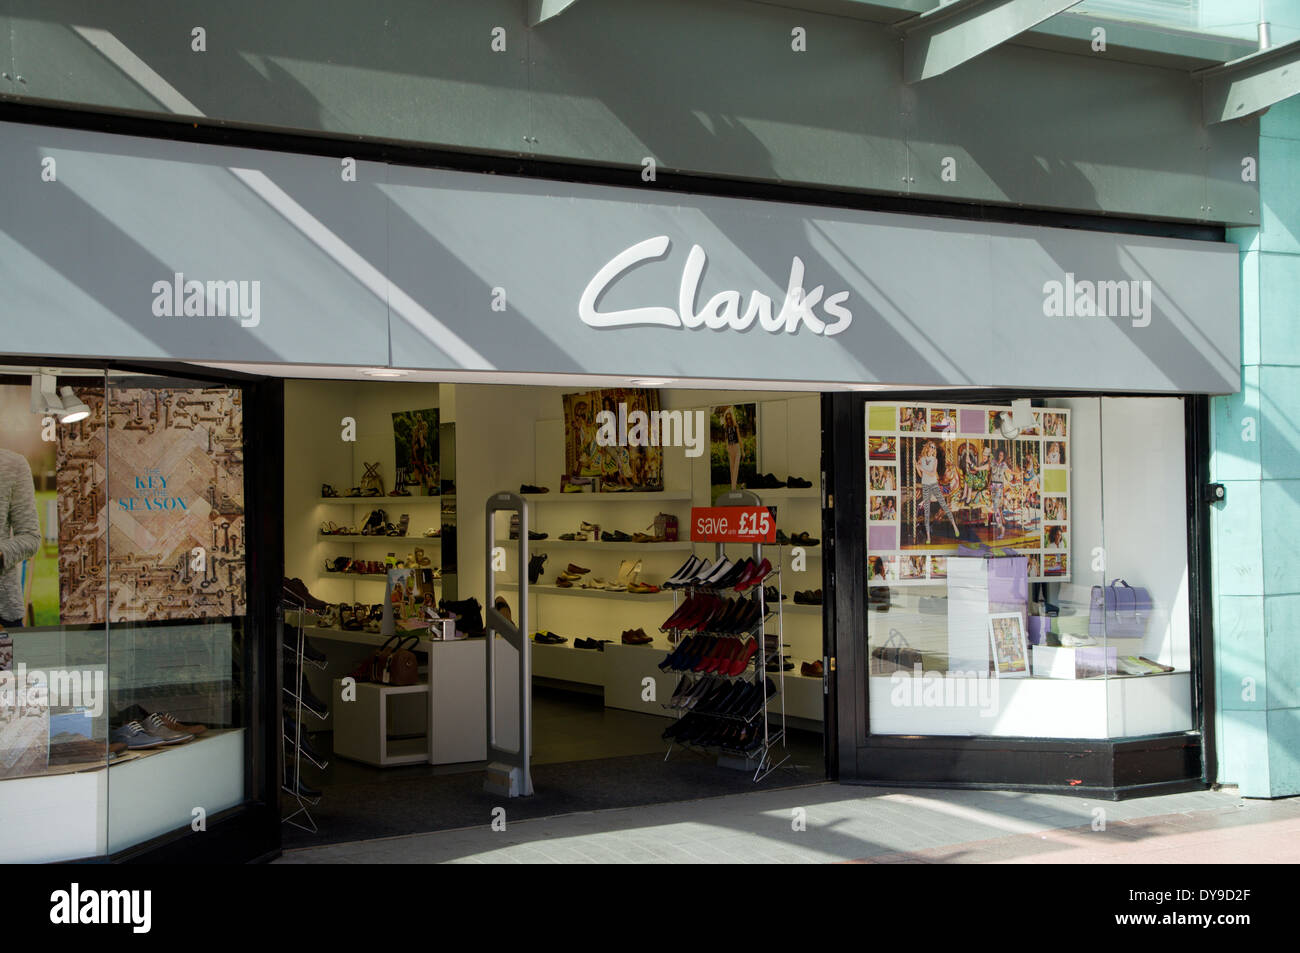 Magasin de chaussures clarks Banque de photographies et d'images à haute  résolution - Alamy